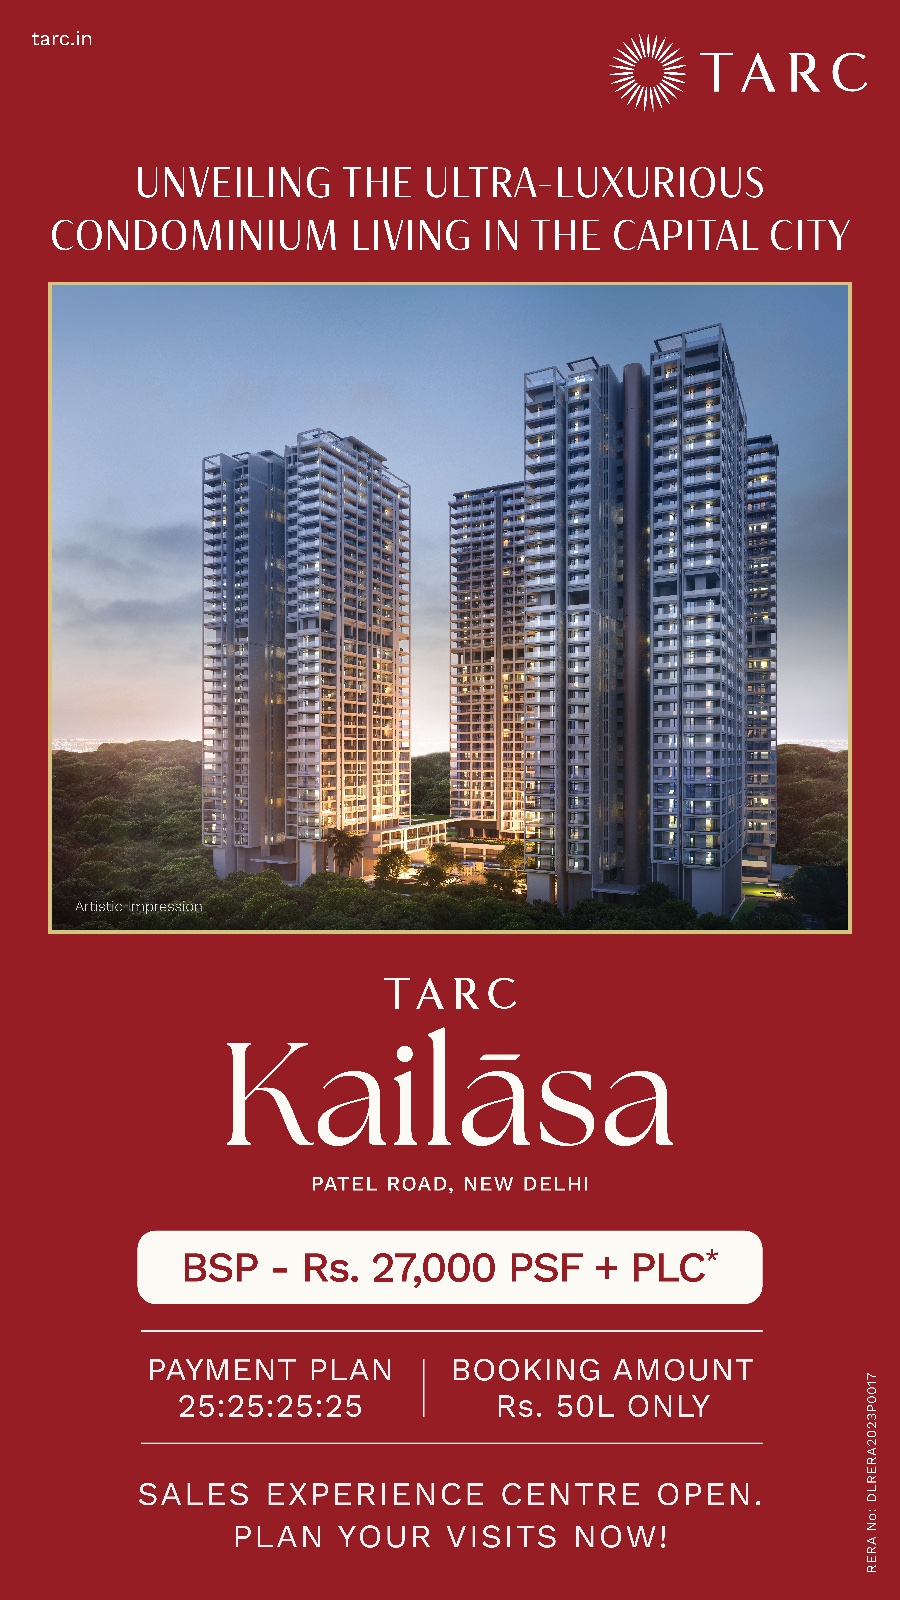 TARC Kailasa: Redefining Luxury Condominiums in Patel Road, New Delhi Update